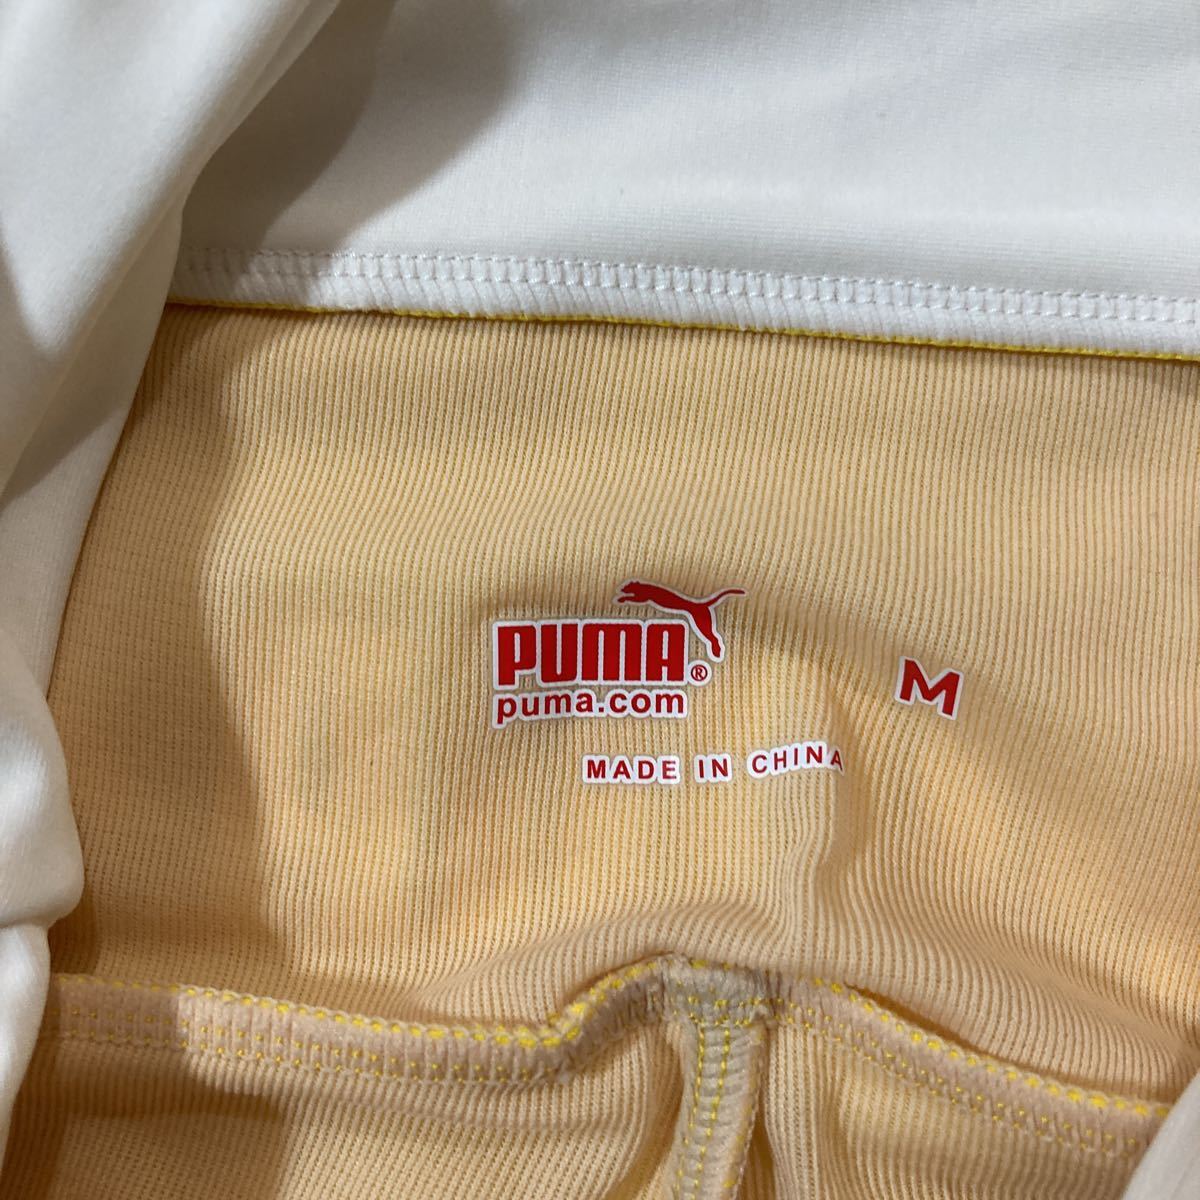 PUMA Puma купальный костюм Rush Guard верх и низ в комплекте выставить M размер желтый цвет белый женский 